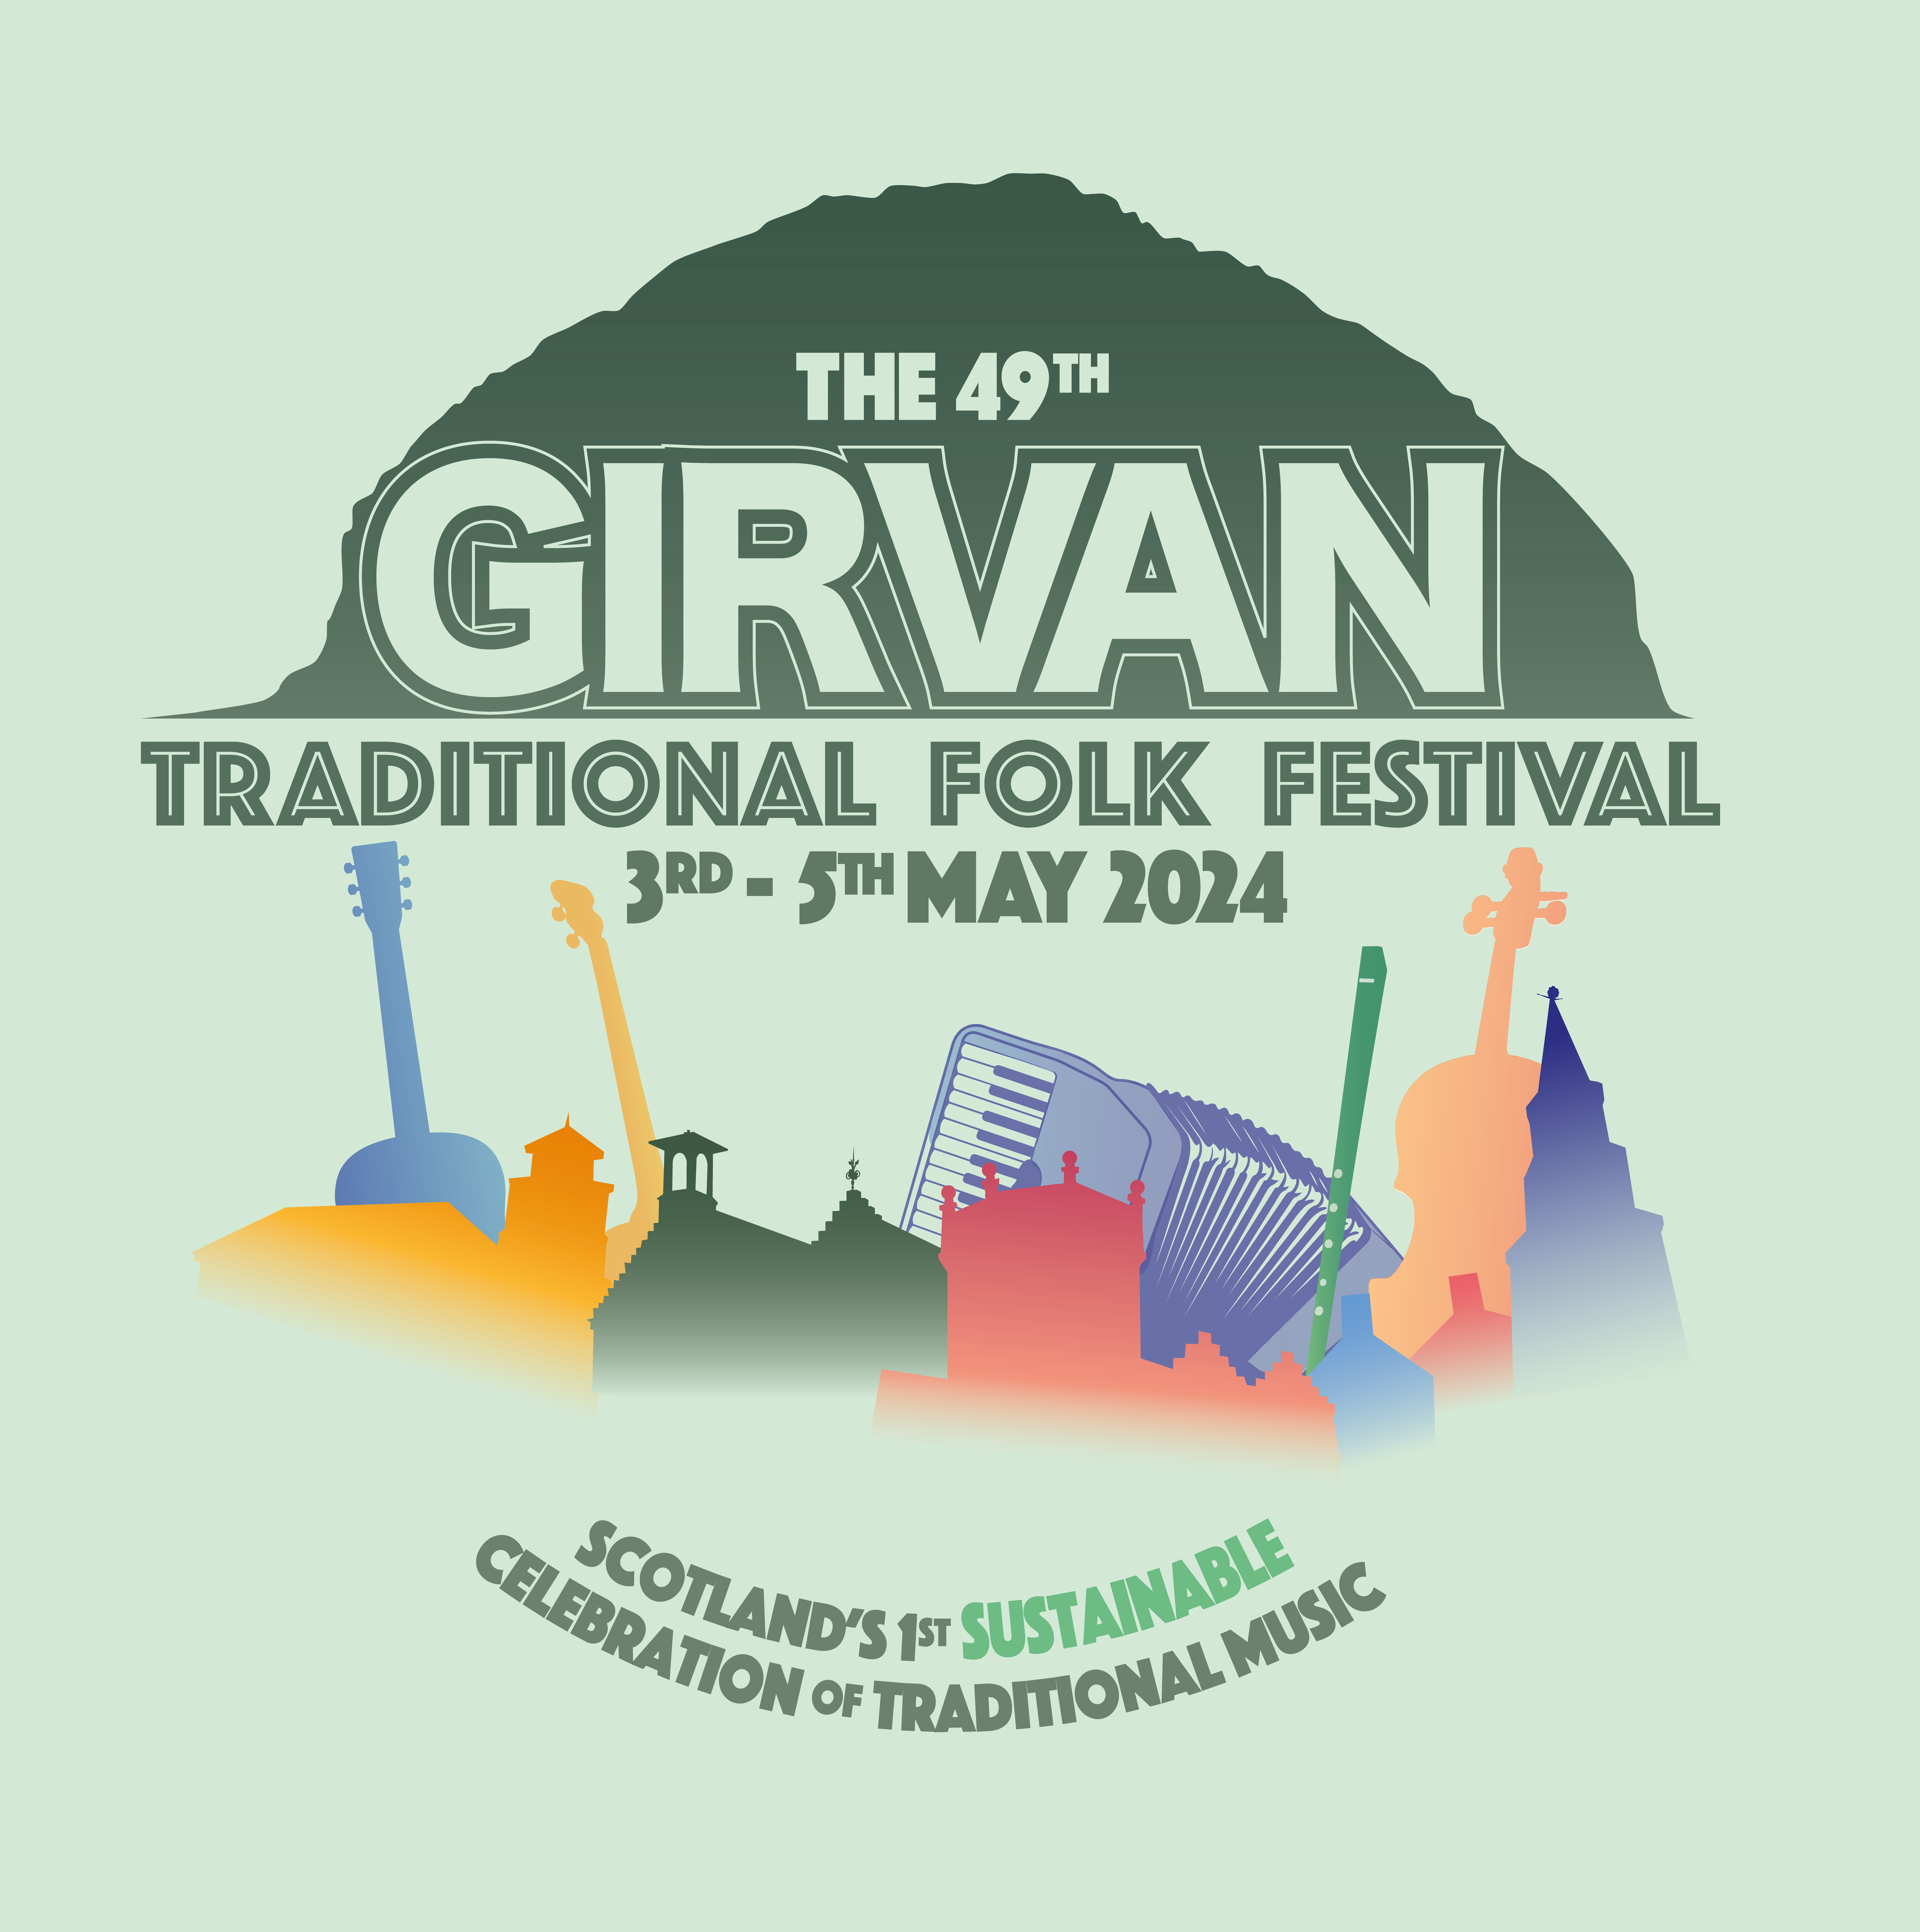 Poster for The 49th Girvan Traditional Folk Festival